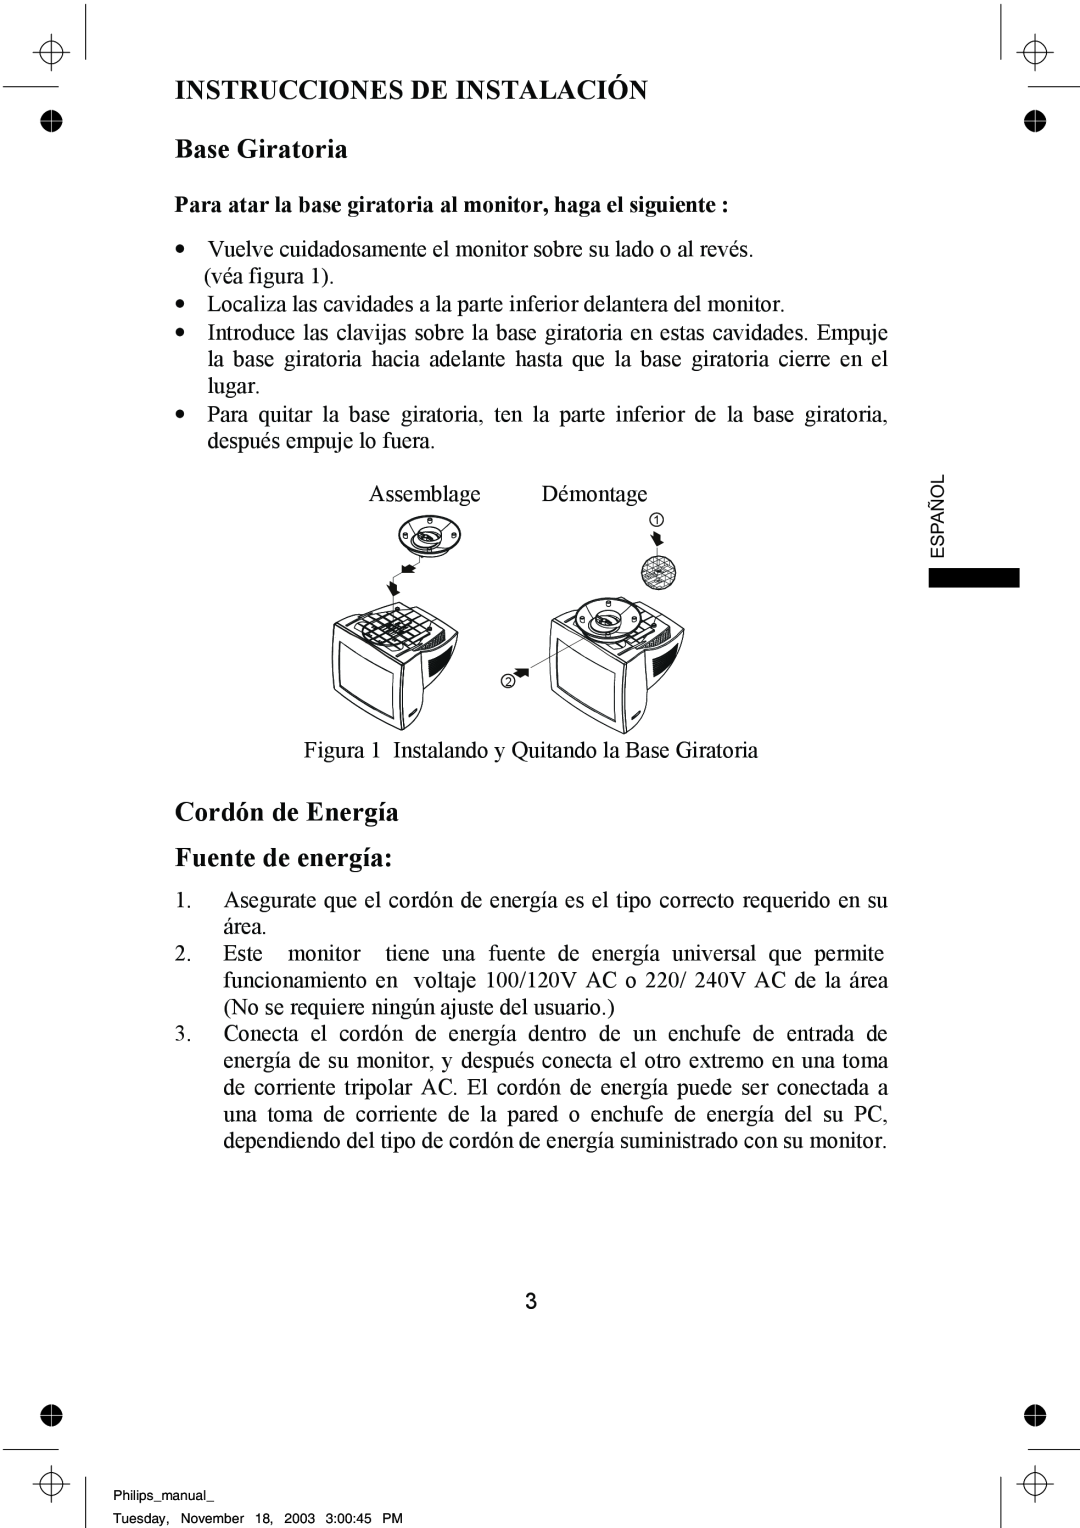 Philips 109B61 manual INSTRUCCIONES DE INSTALACIÓN Base Giratoria, Cordón de Energía Fuente de energía 